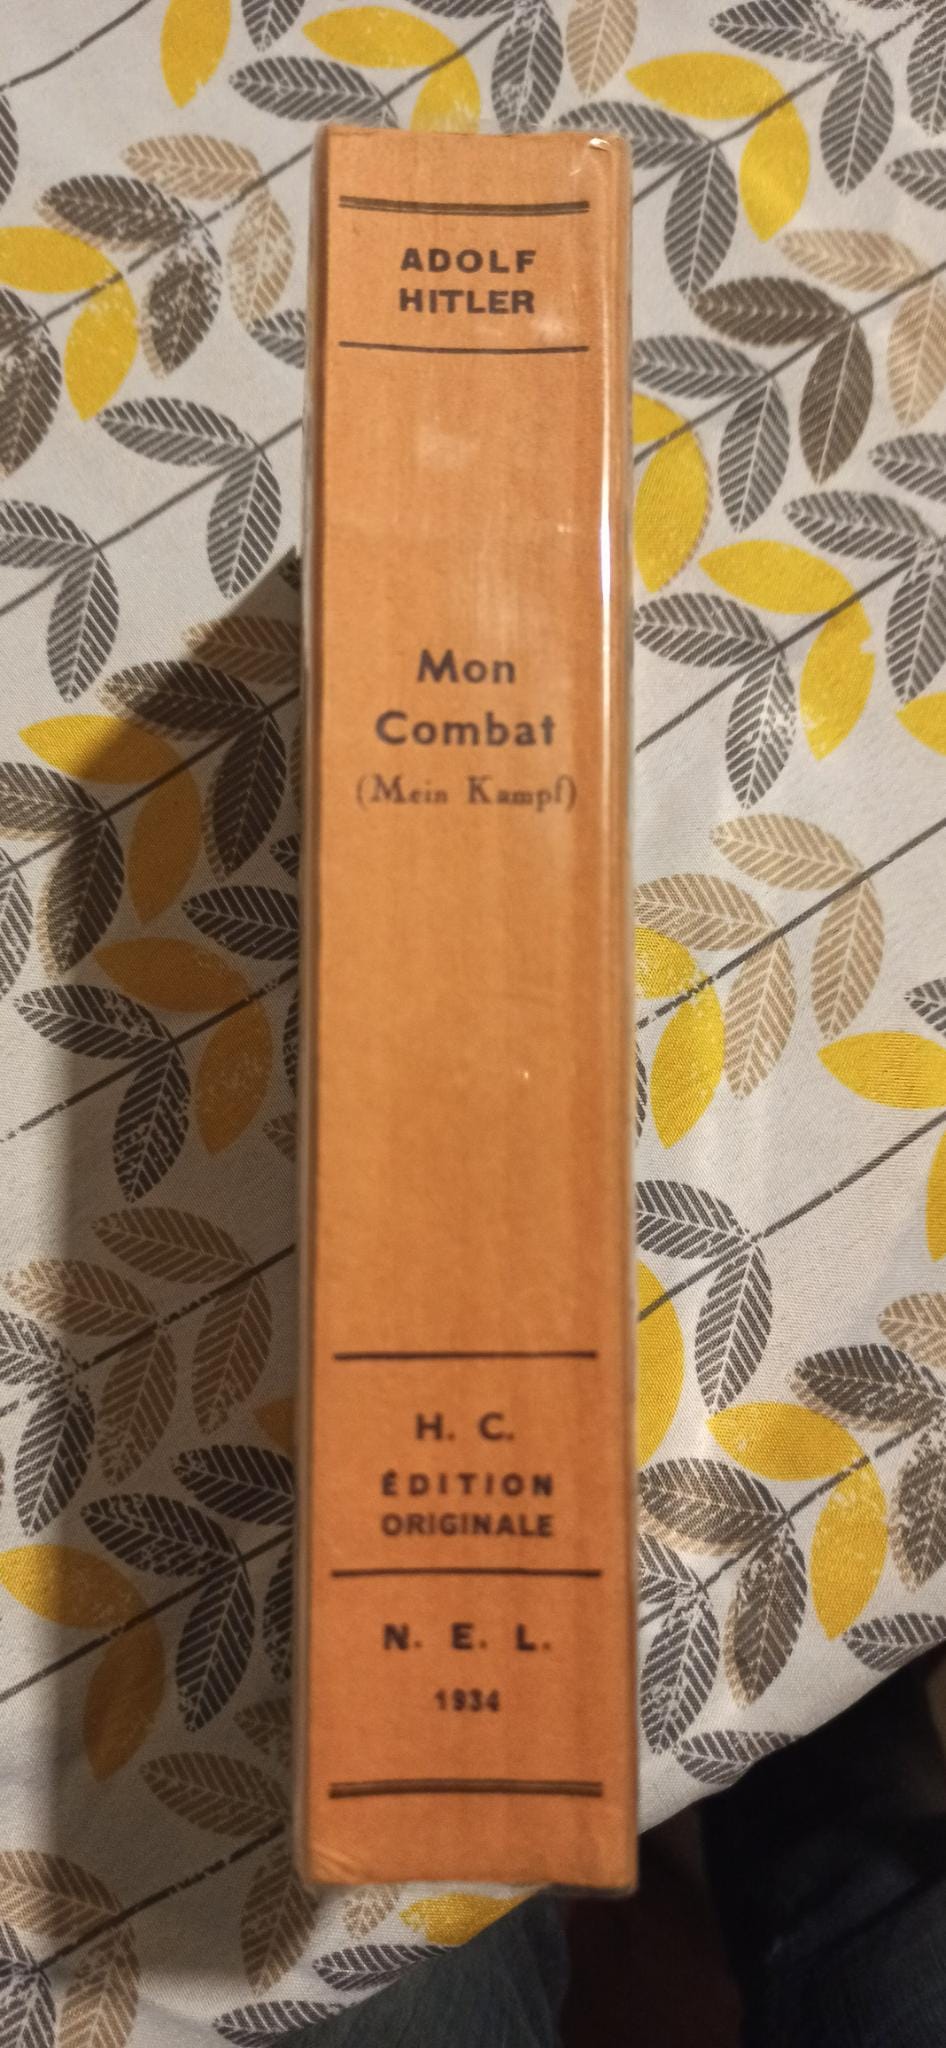 Édition originale (?) 1934  traduction française de Mein Kampf, éditions latines Img-2011